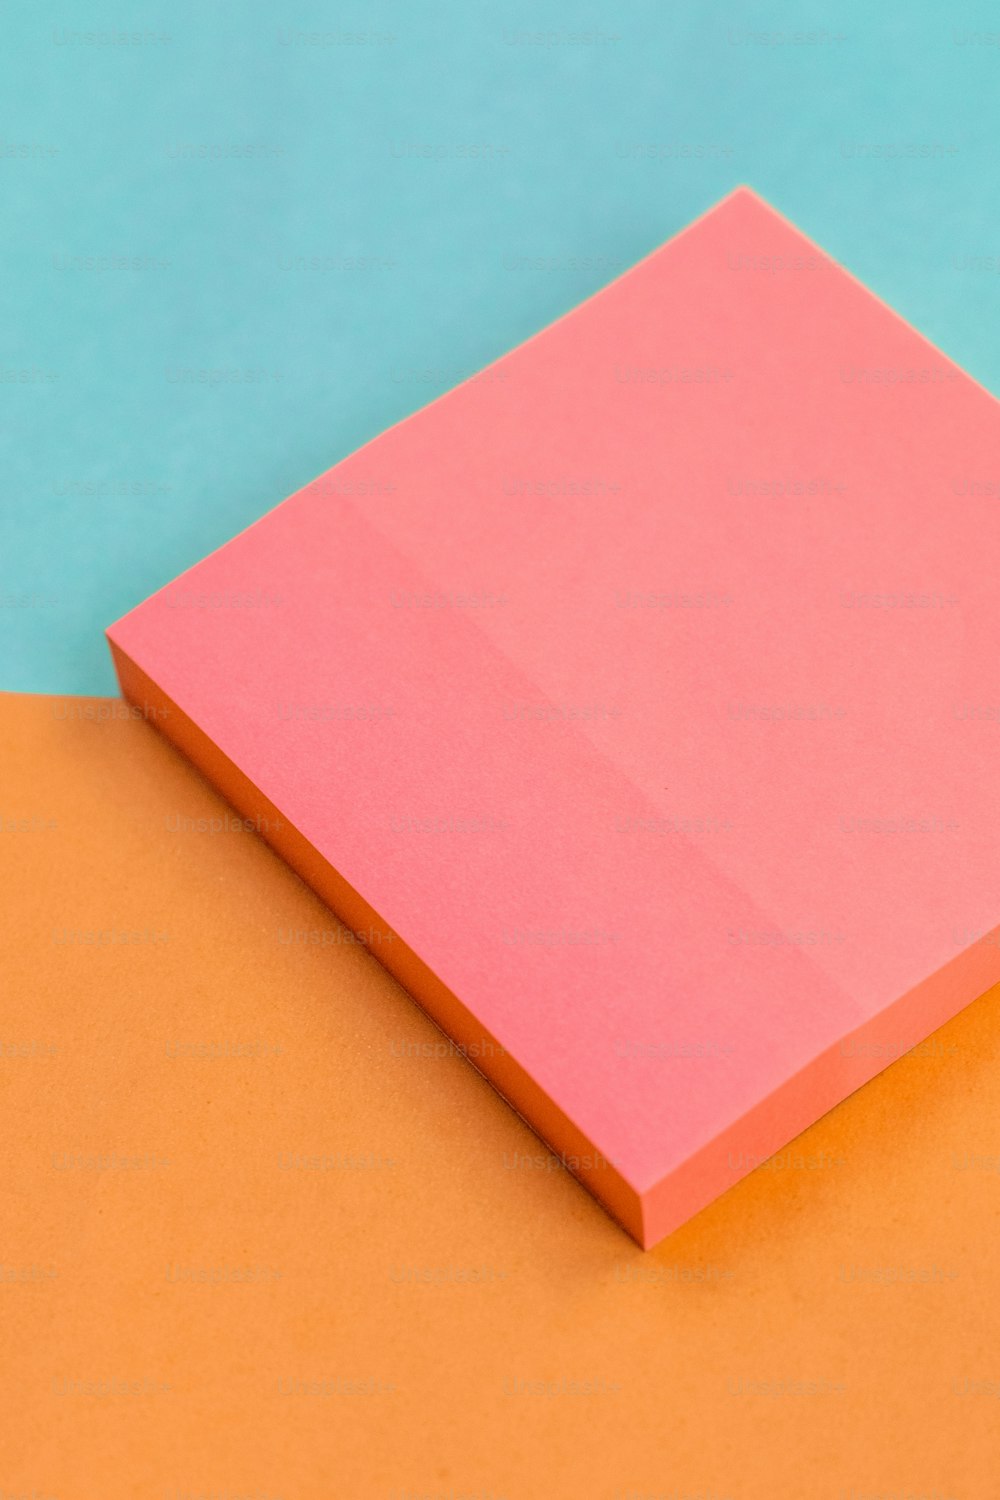 オレンジと青の表面の上に置かれたピンクの紙